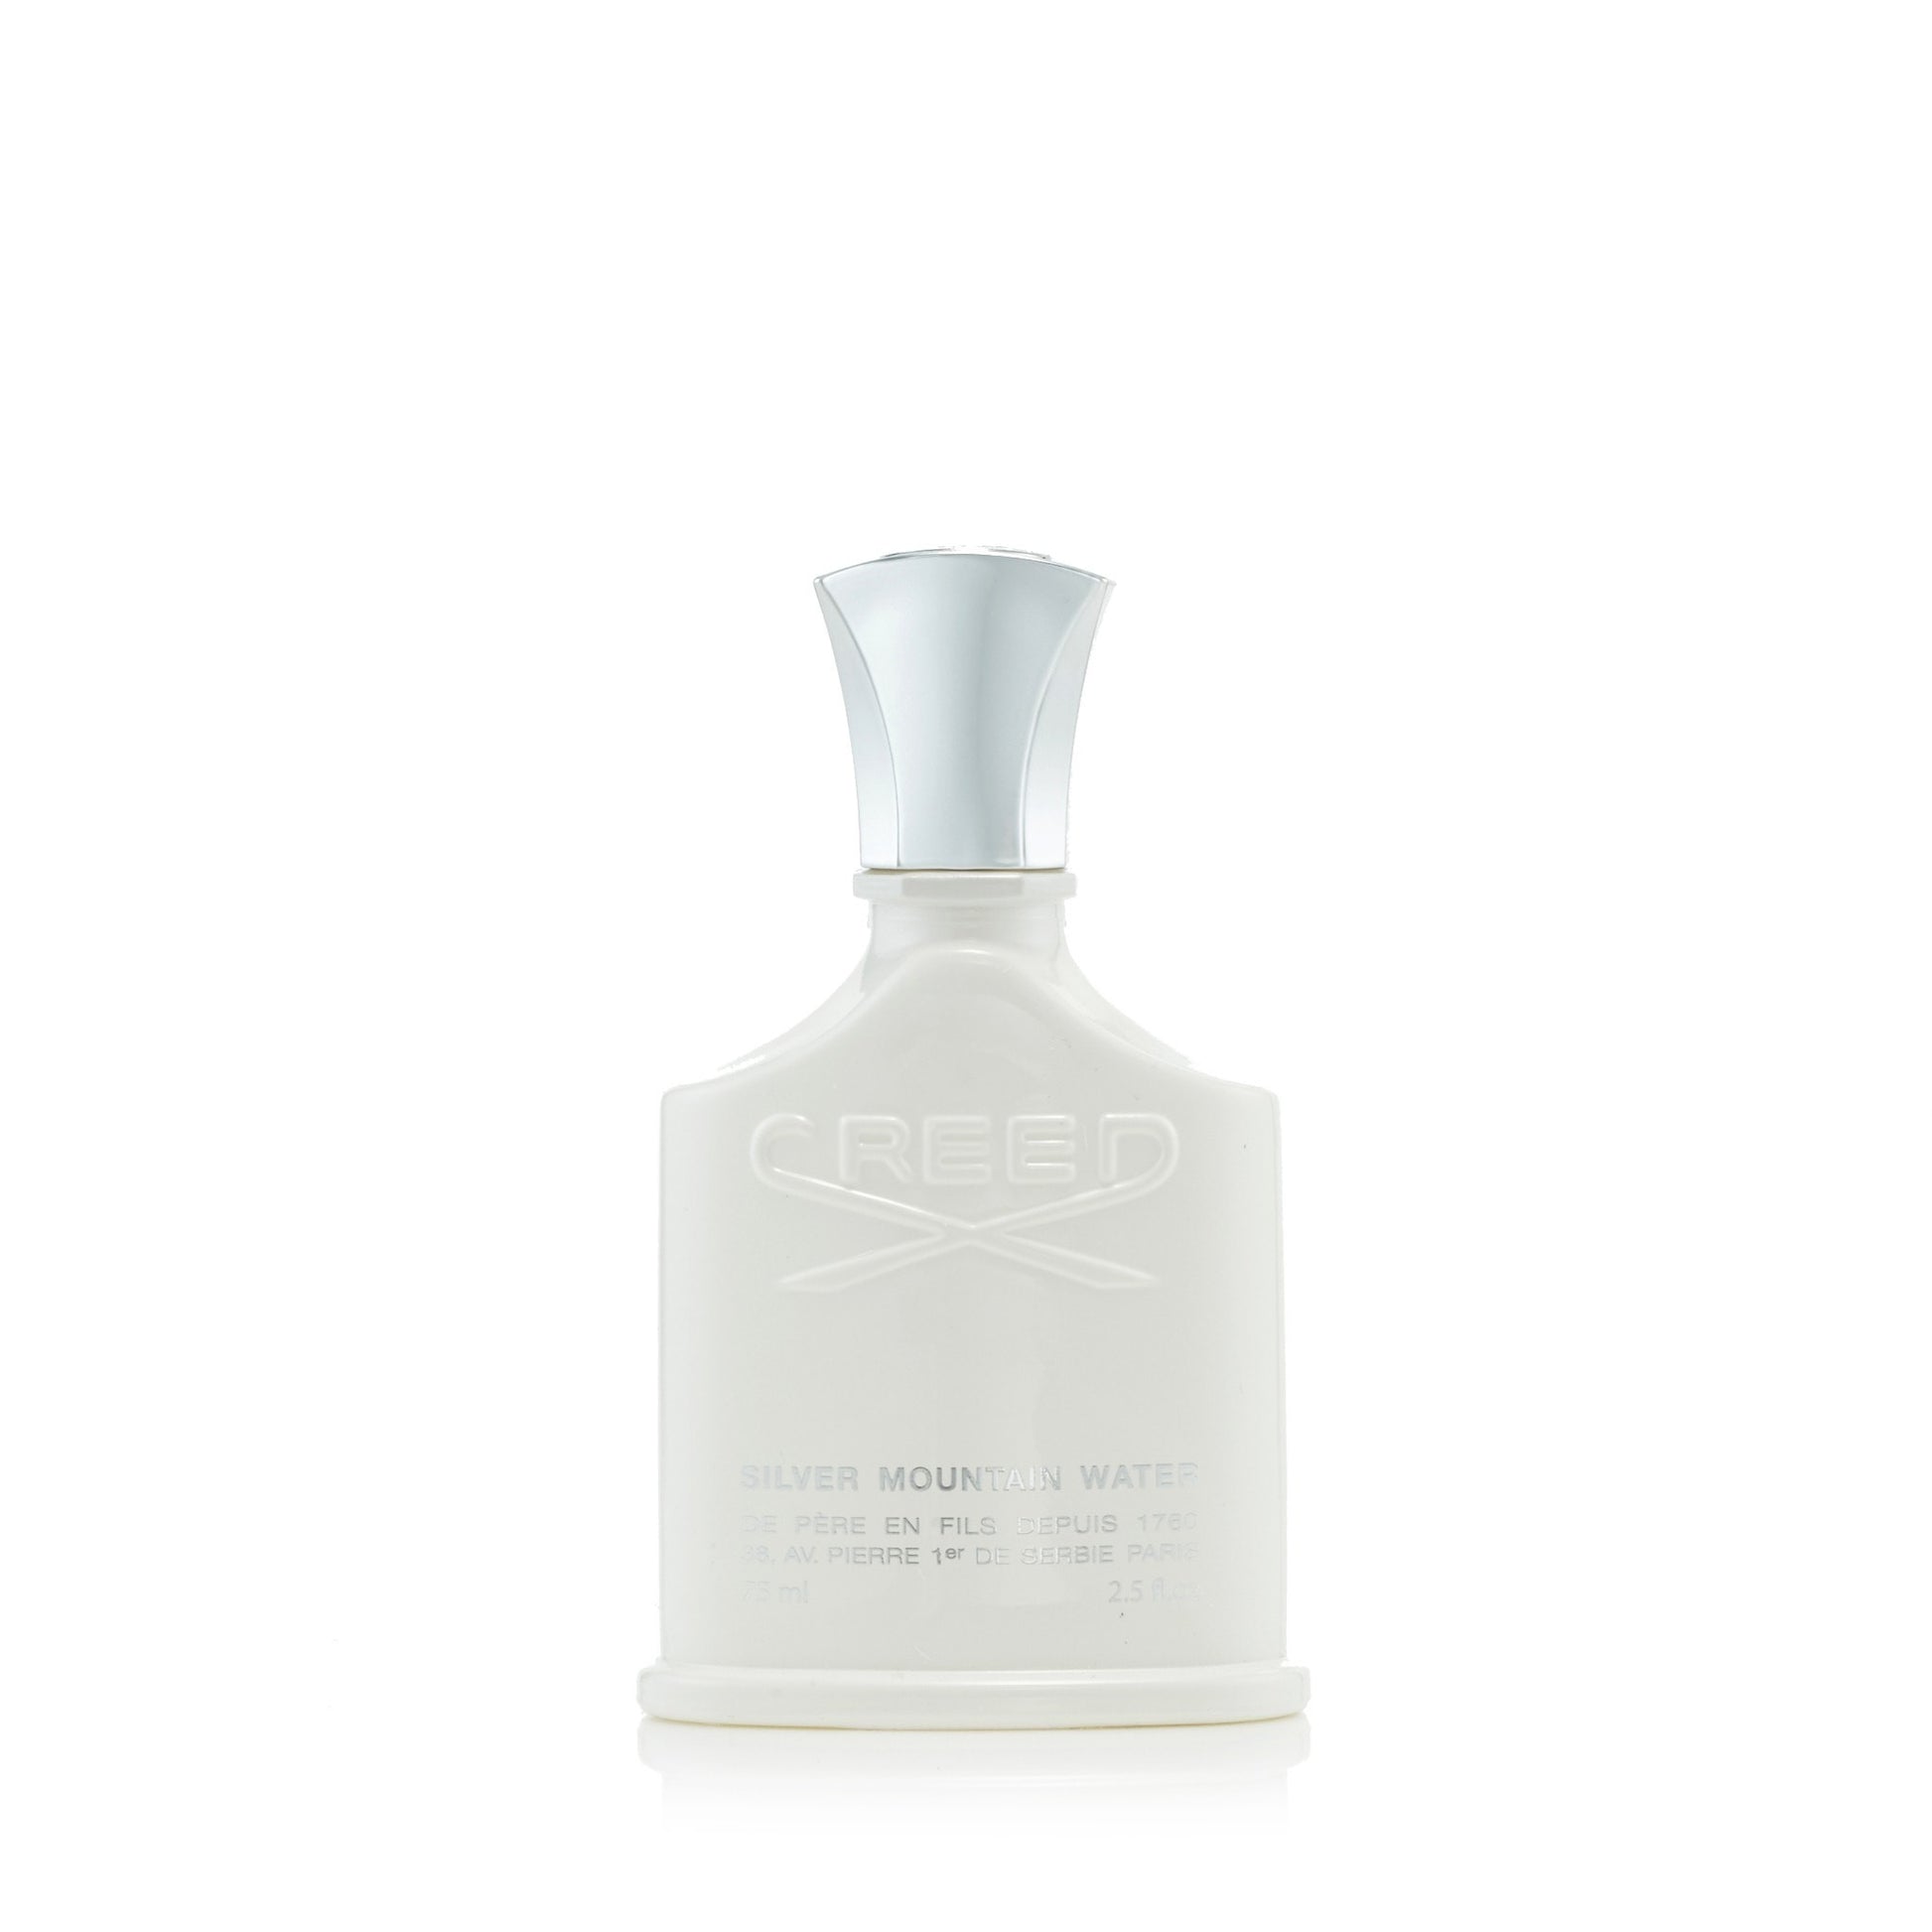 Silver Mountain Water Eau de Parfum Spray for Men by Creed 2.5 oz. Click to open in modal